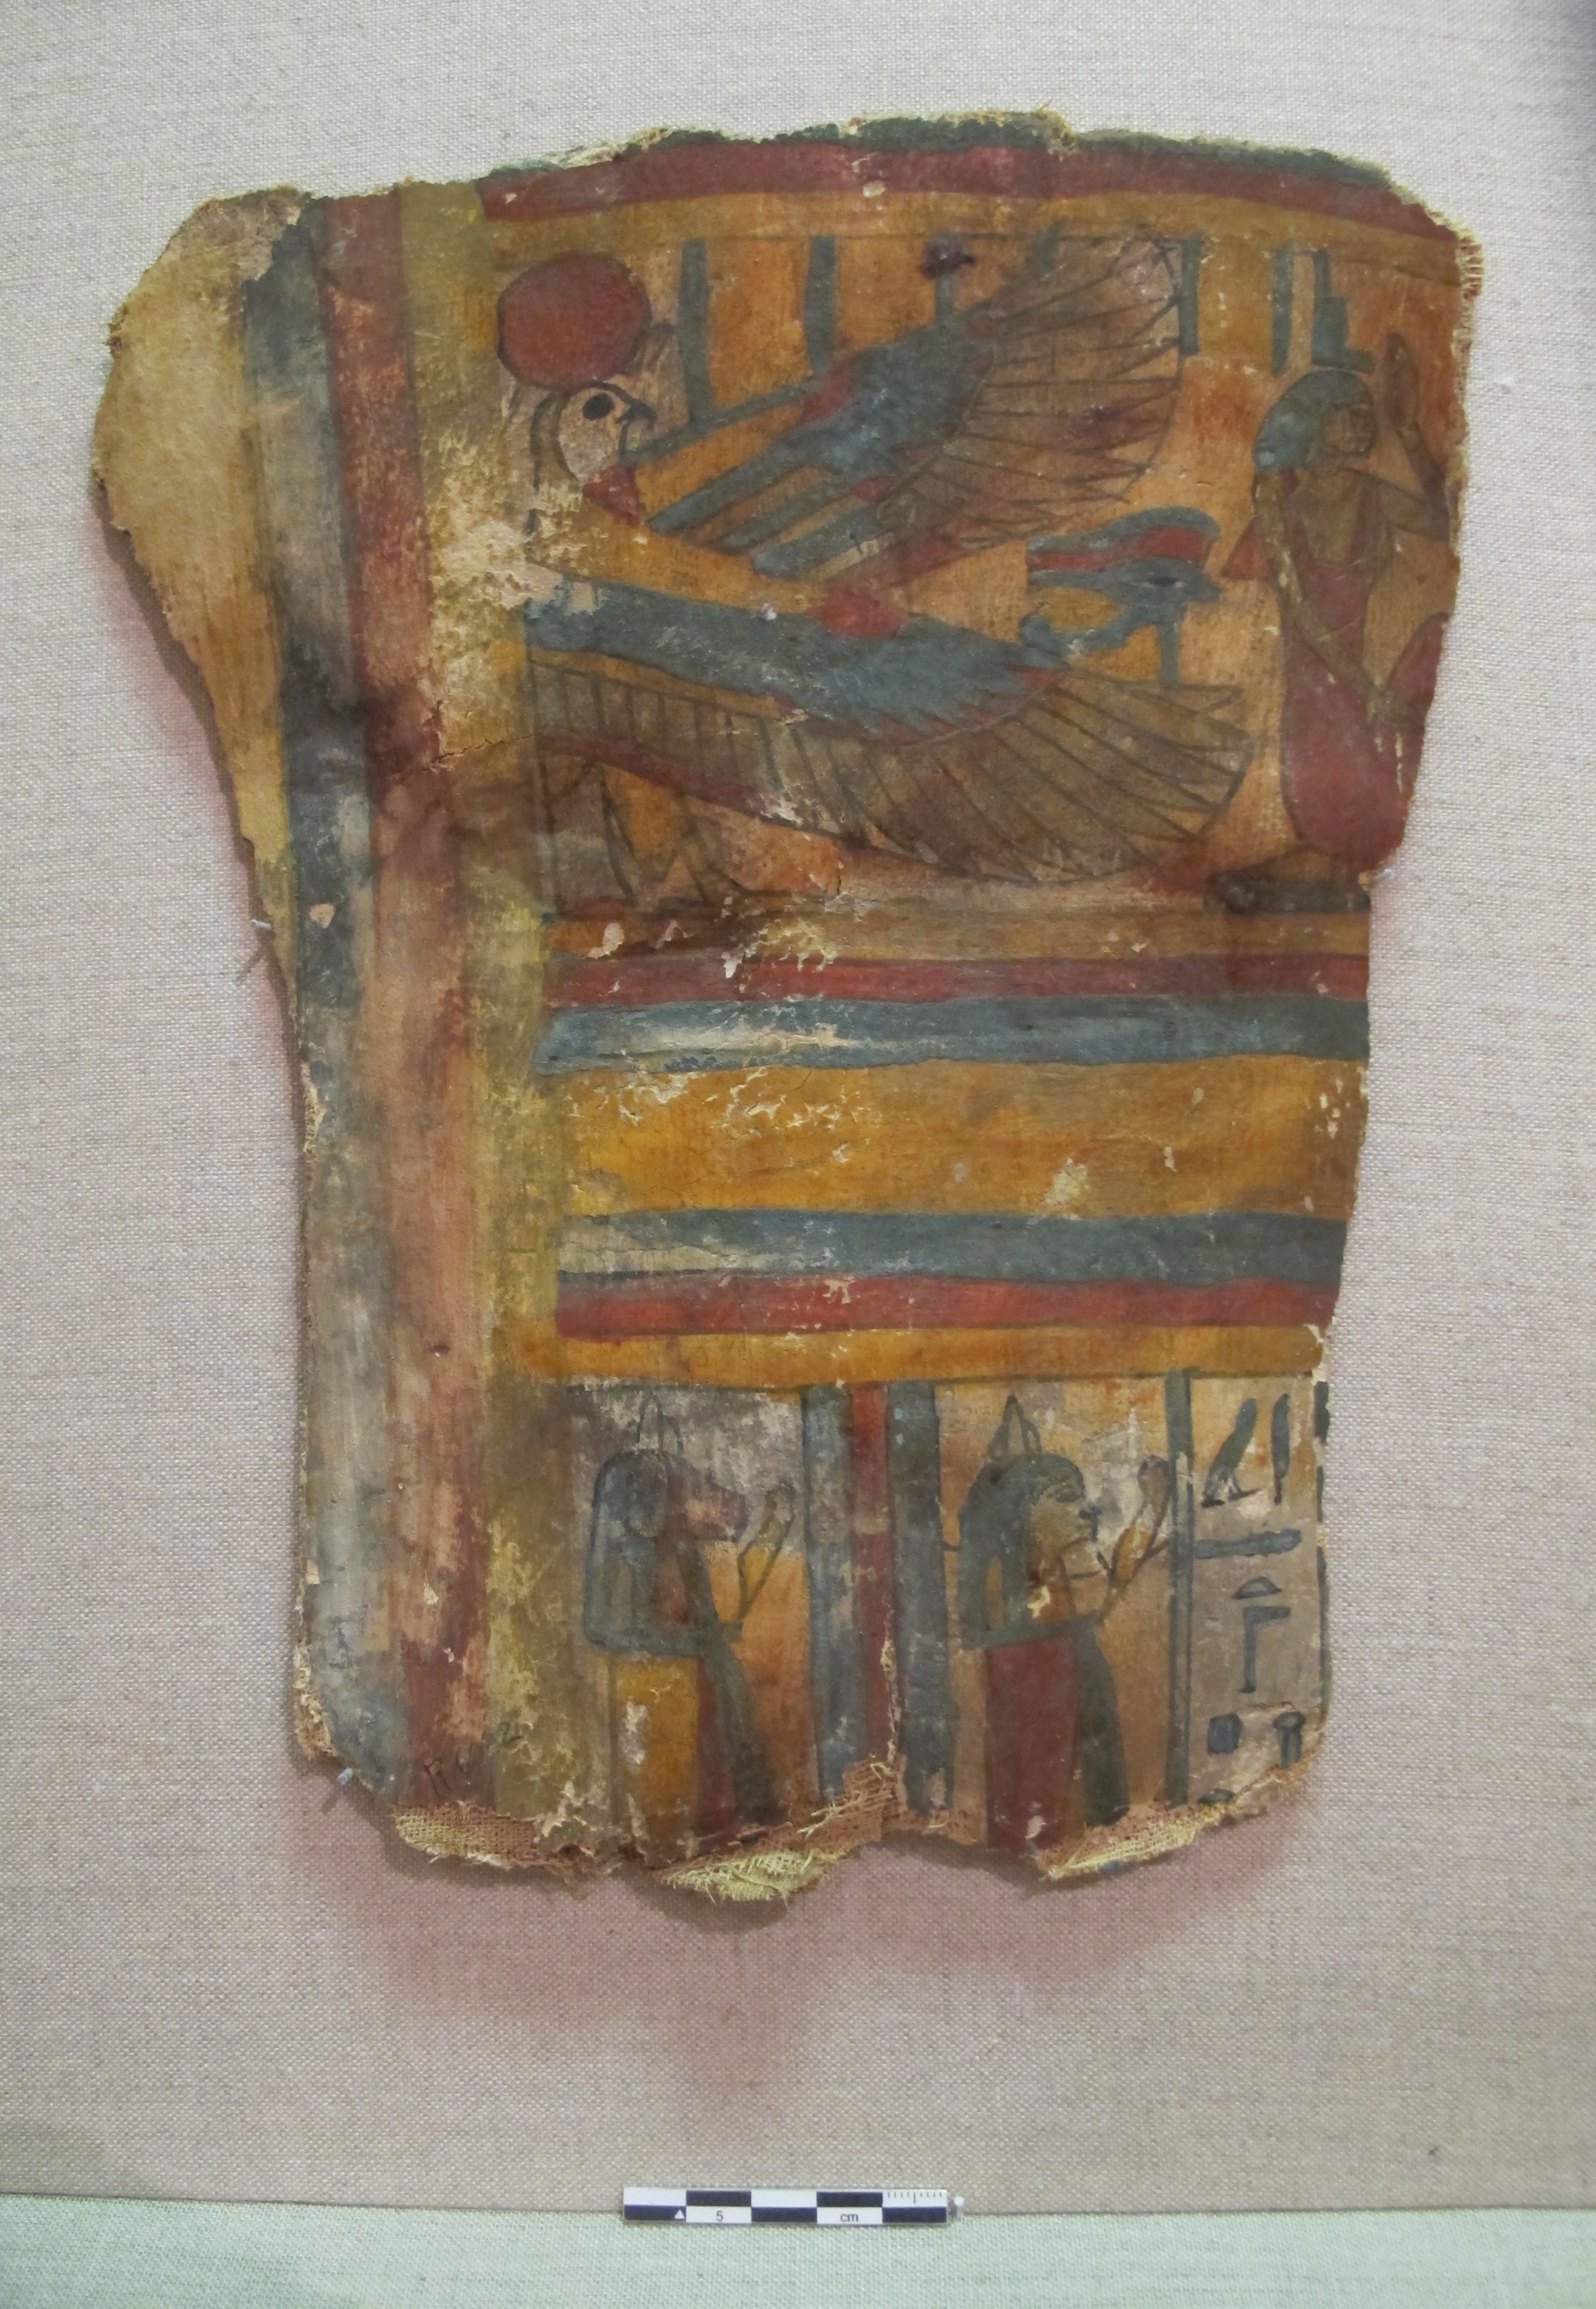 coffin fragment